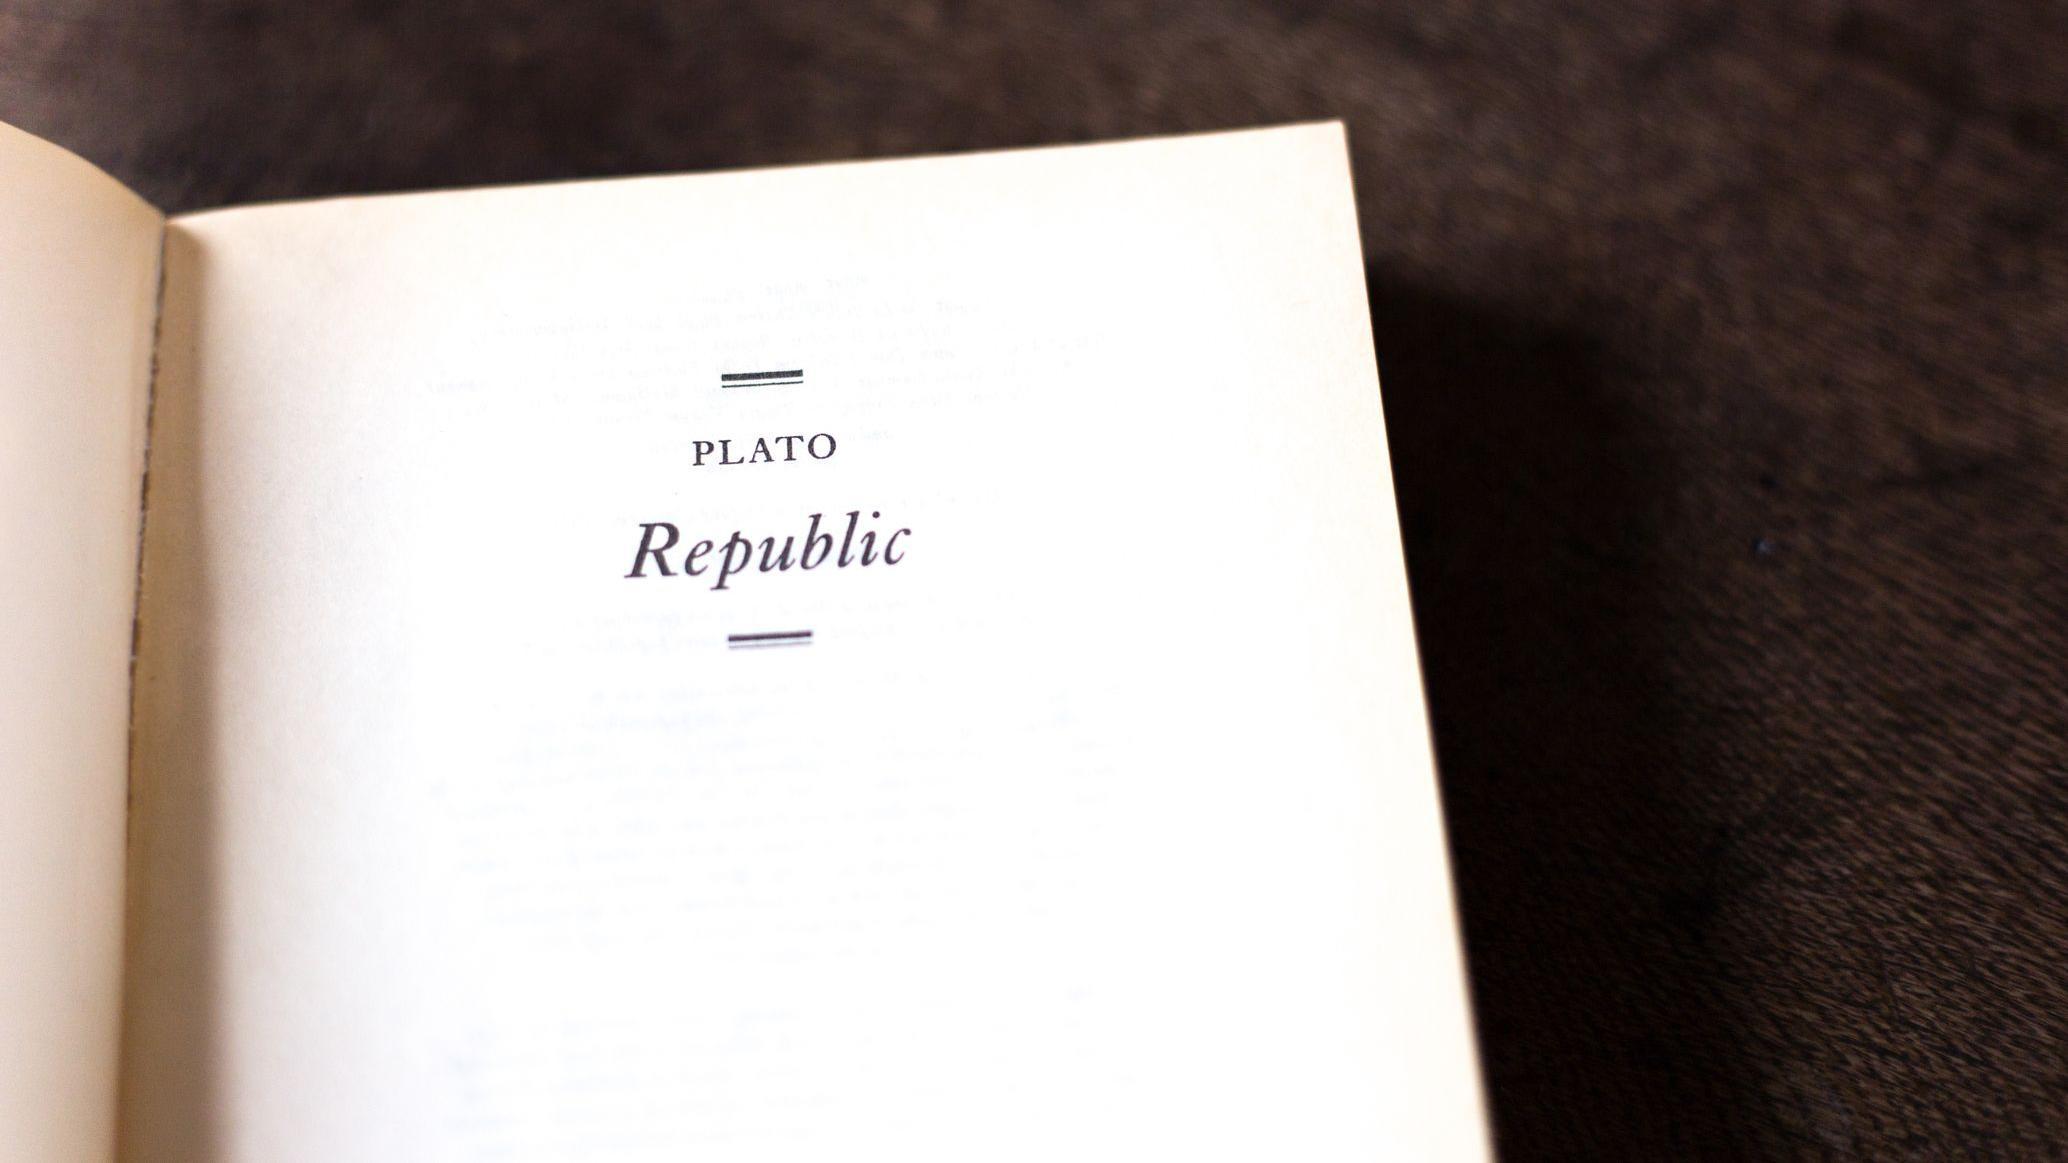 La portada del libro de Platón